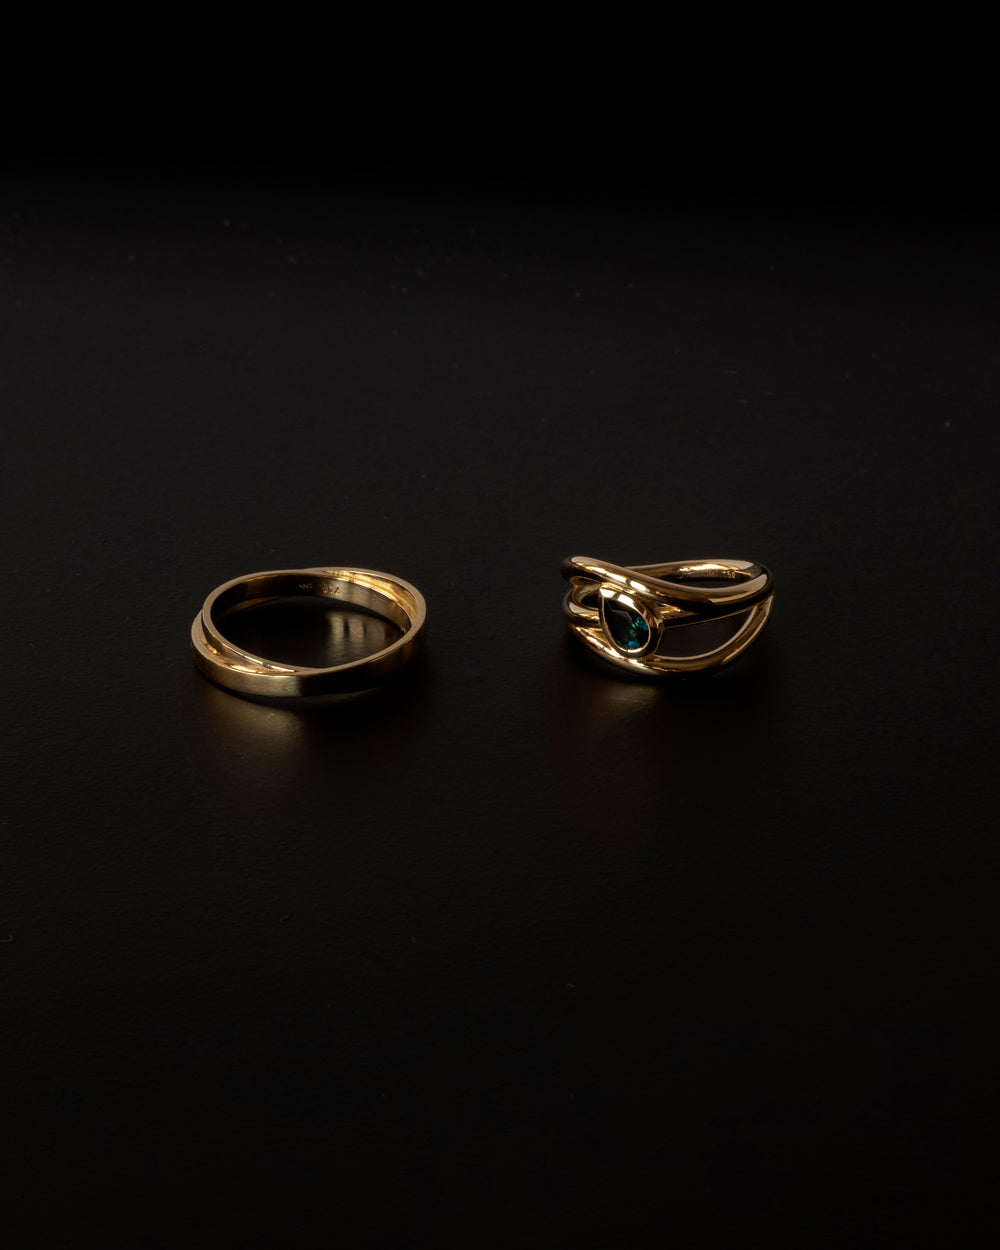 Bespoke wedding rings for J&J